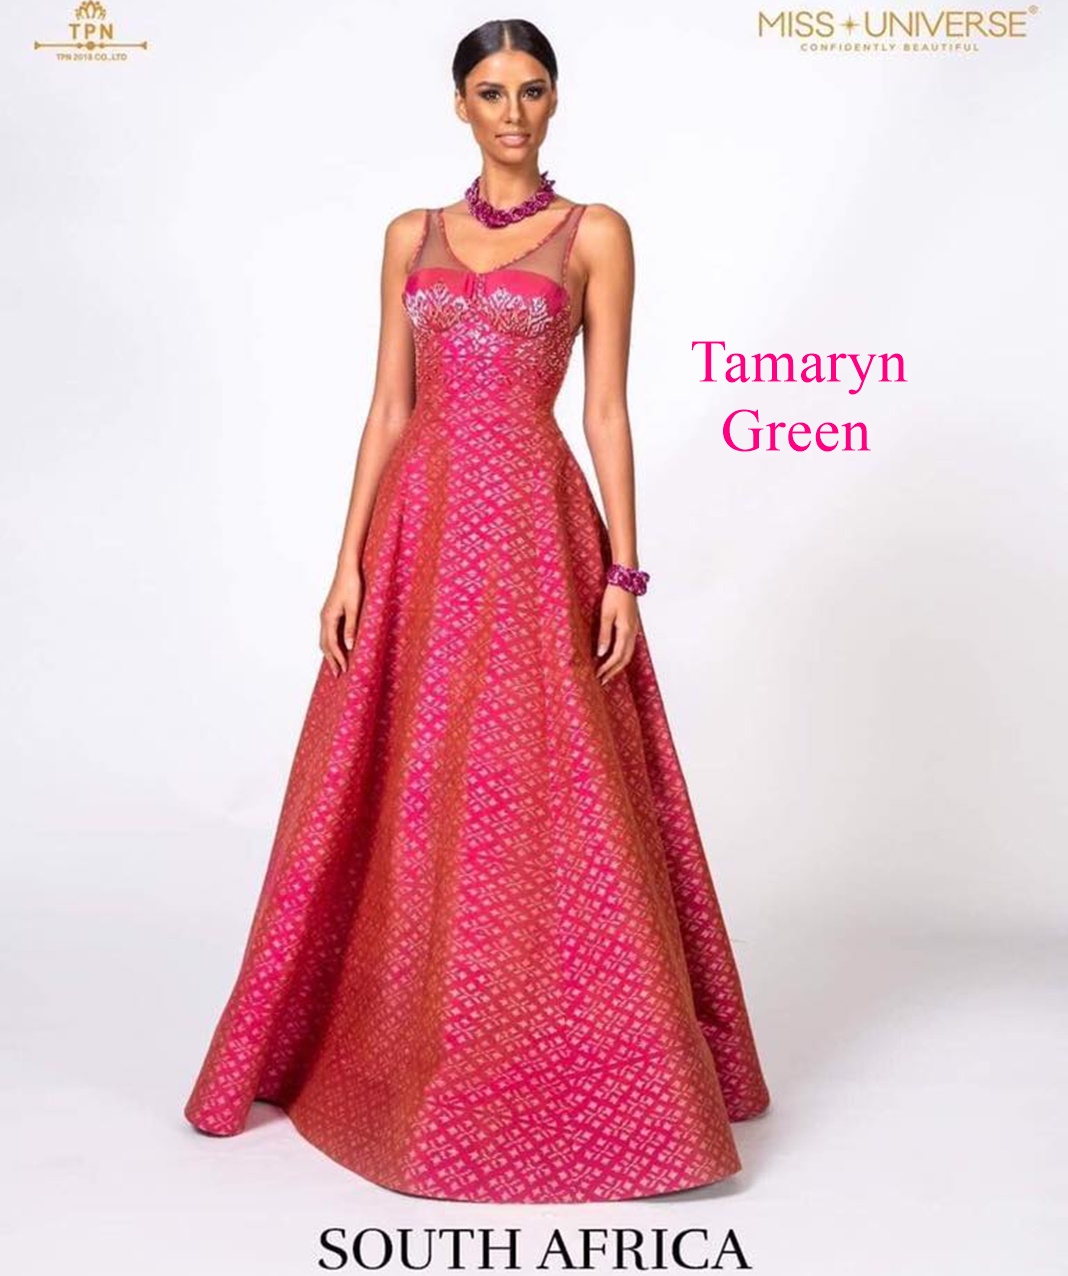 tamaryn green, top 2 de miss universe 2018. - Página 20 Xd4yps10